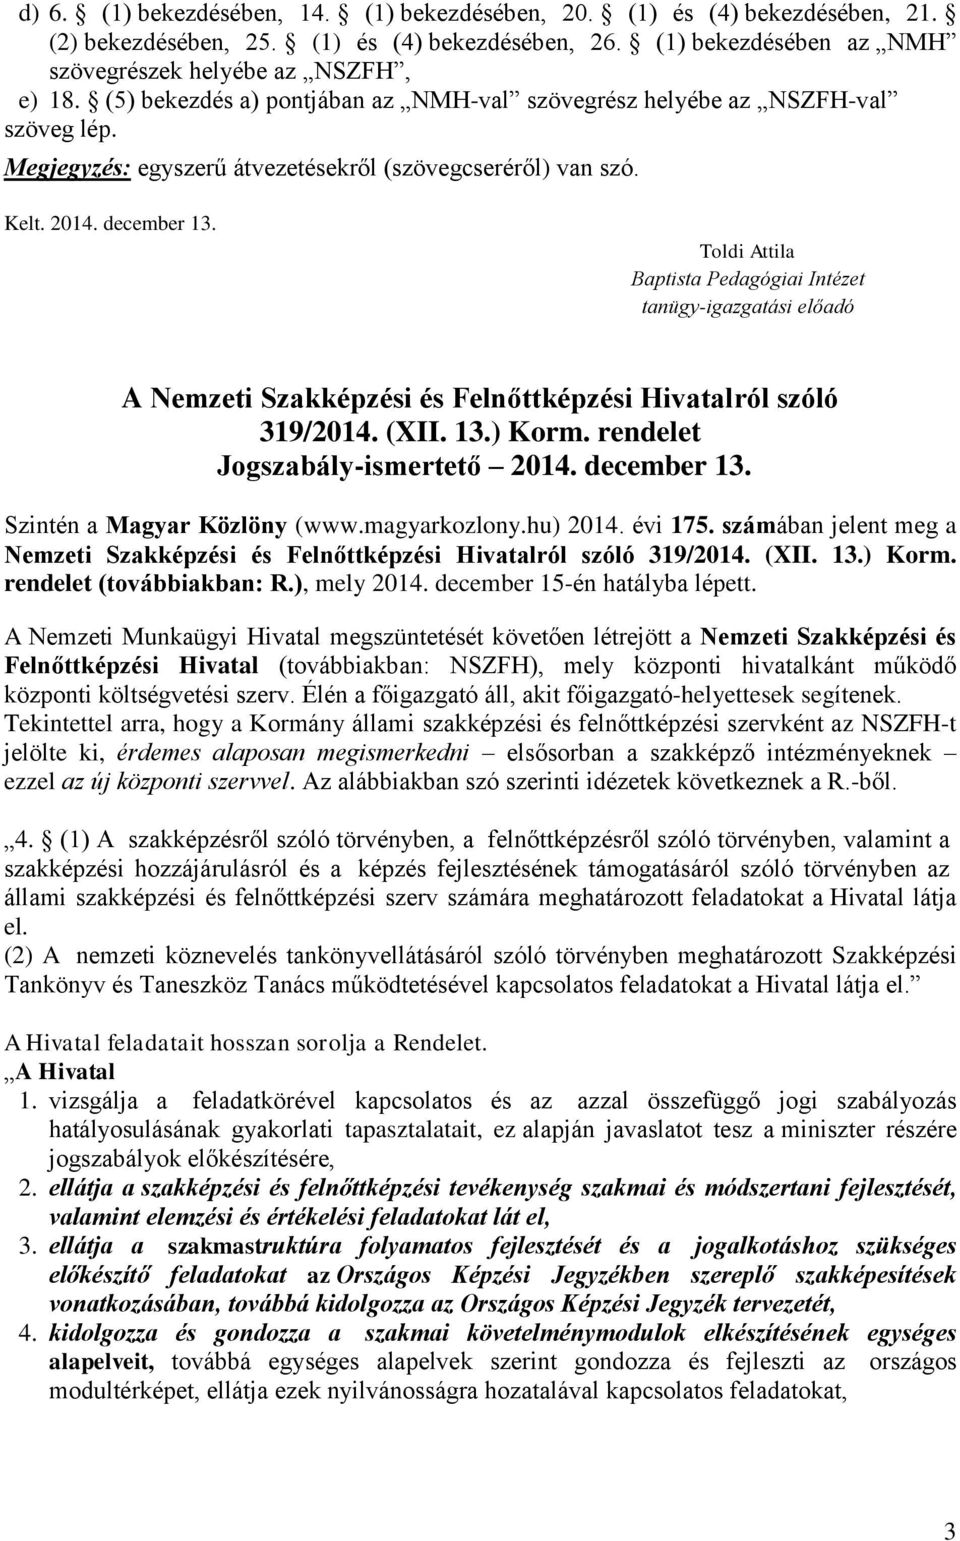 Toldi Attila Baptista Pedagógiai Intézet tanügy-igazgatási előadó A Nemzeti Szakképzési és Felnőttképzési Hivatalról szóló 319/2014. (XII. 13.) Korm. rendelet Jogszabály-ismertető 2014. december 13.